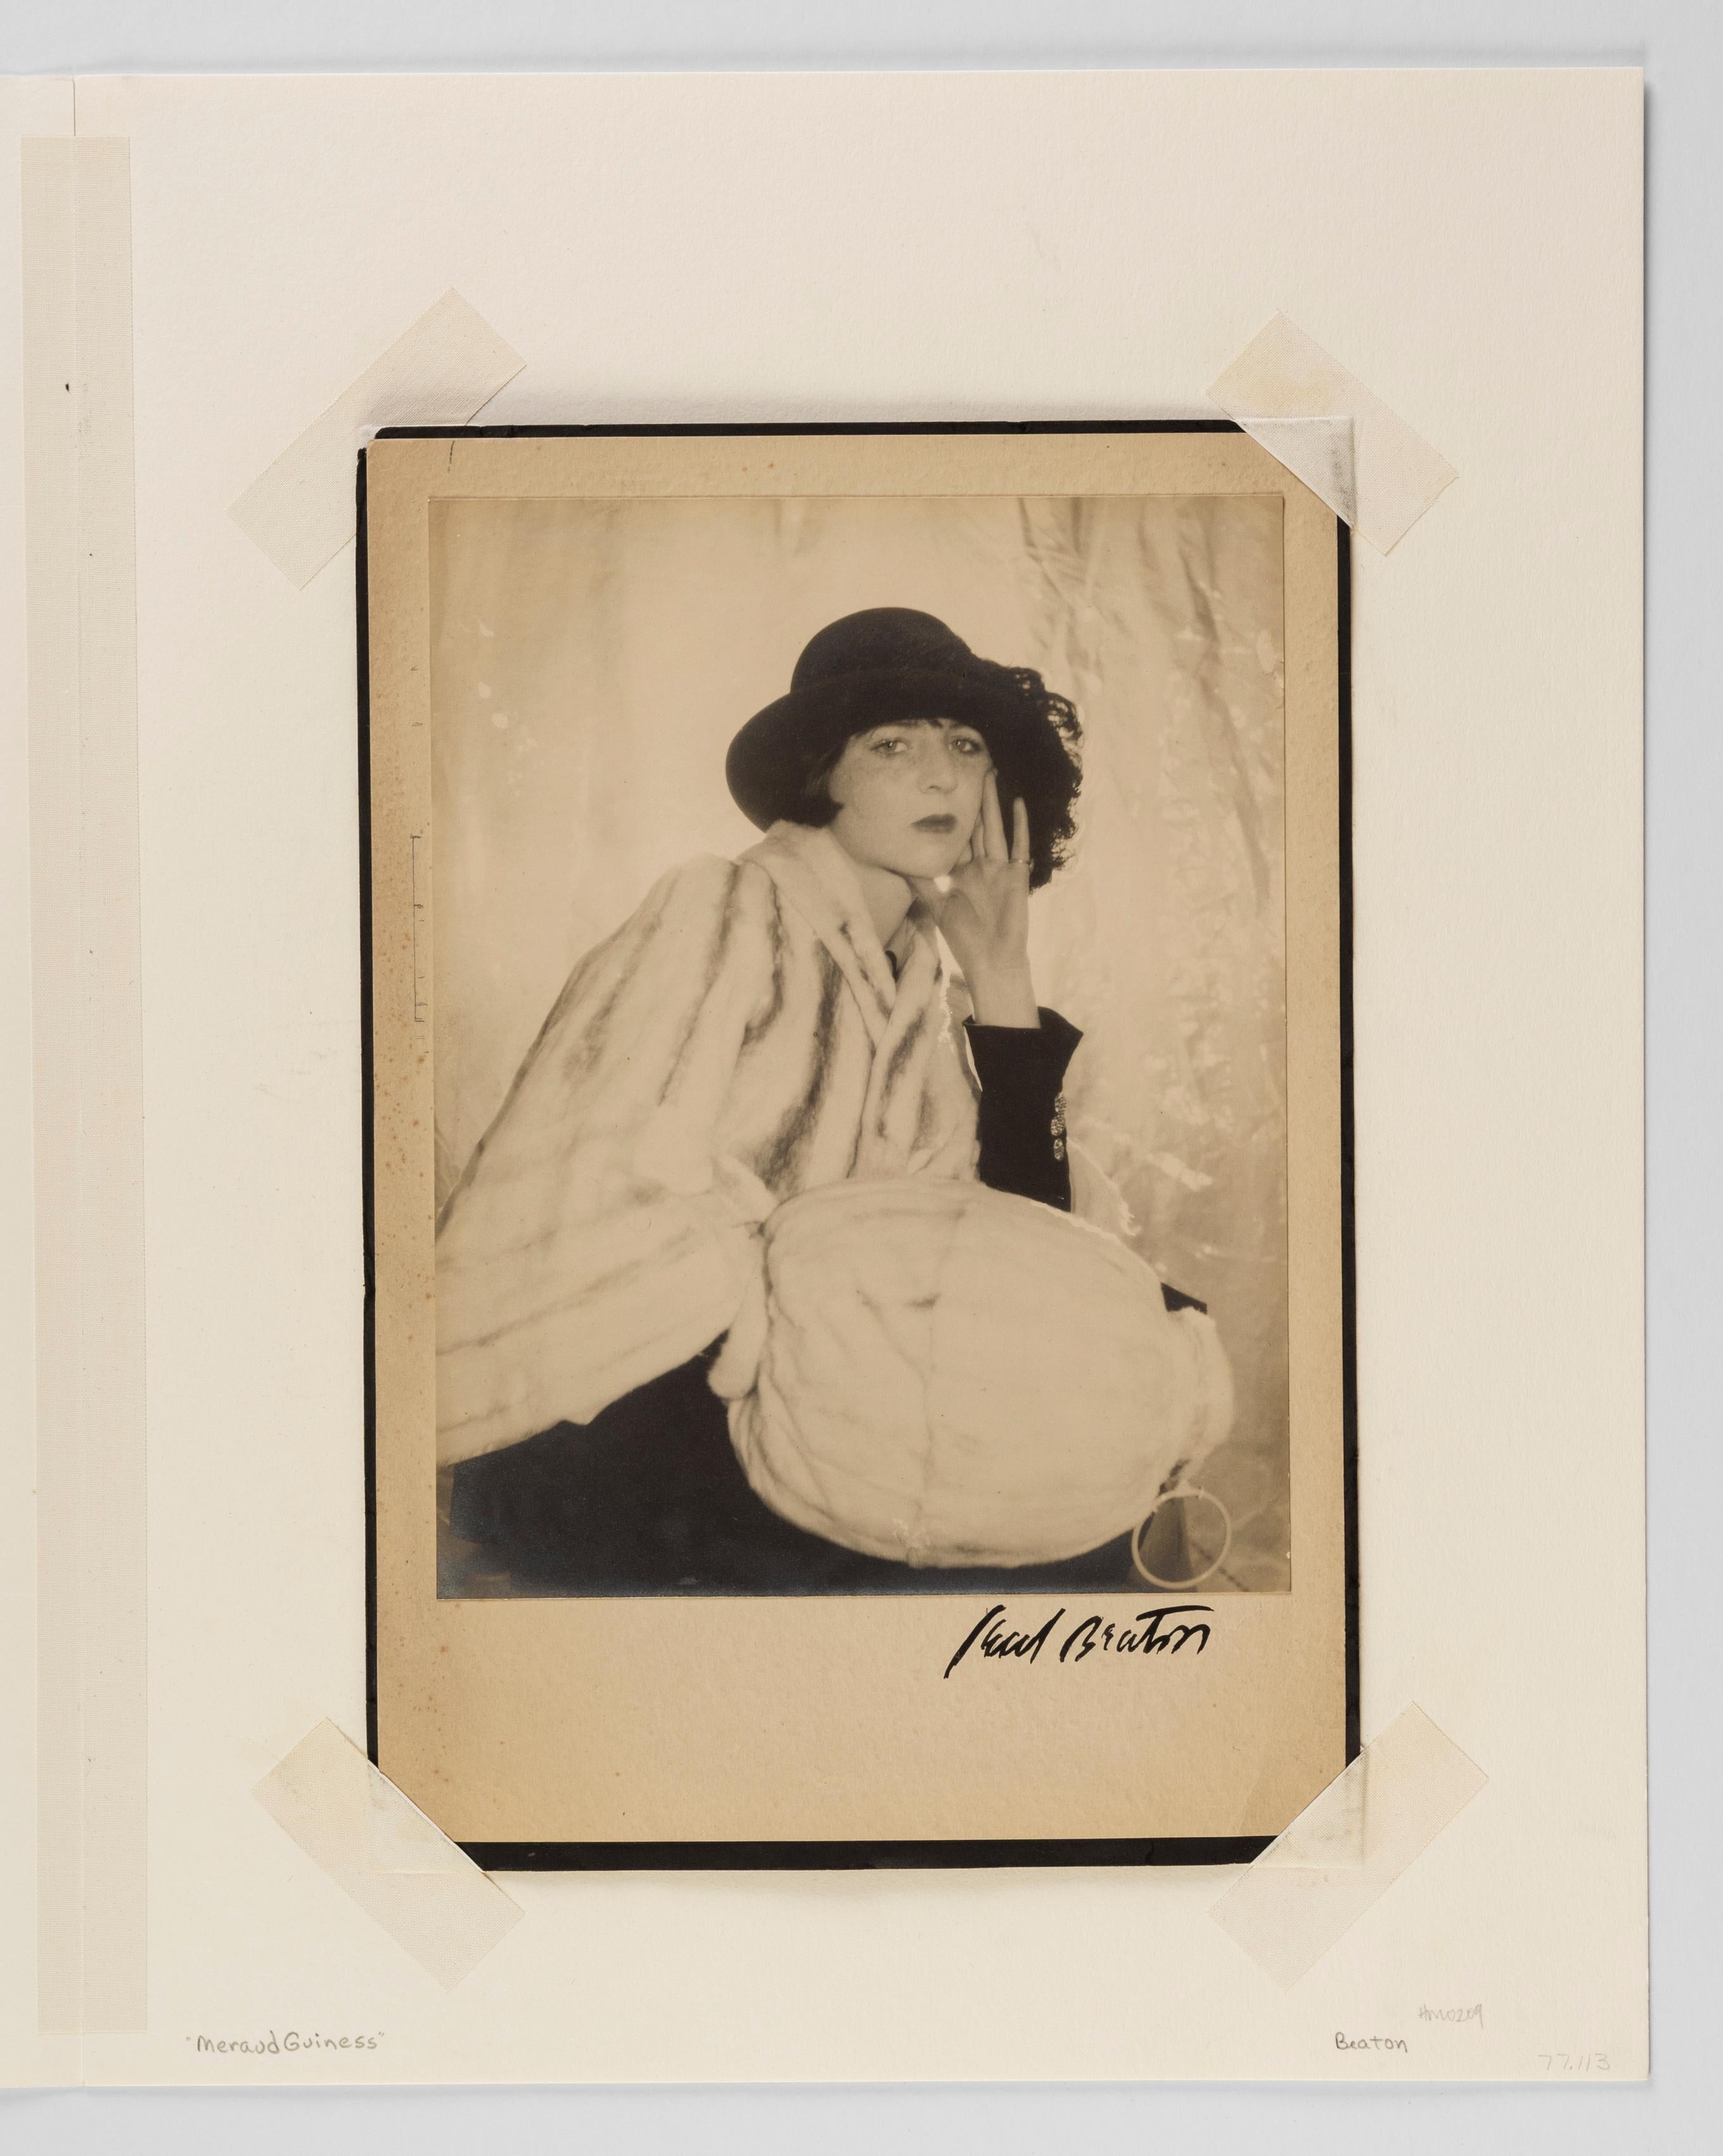 Meraud Guinness, 1930er Jahre – Cecil Beaton (Porträtfotografie in der Mode) im Angebot 1